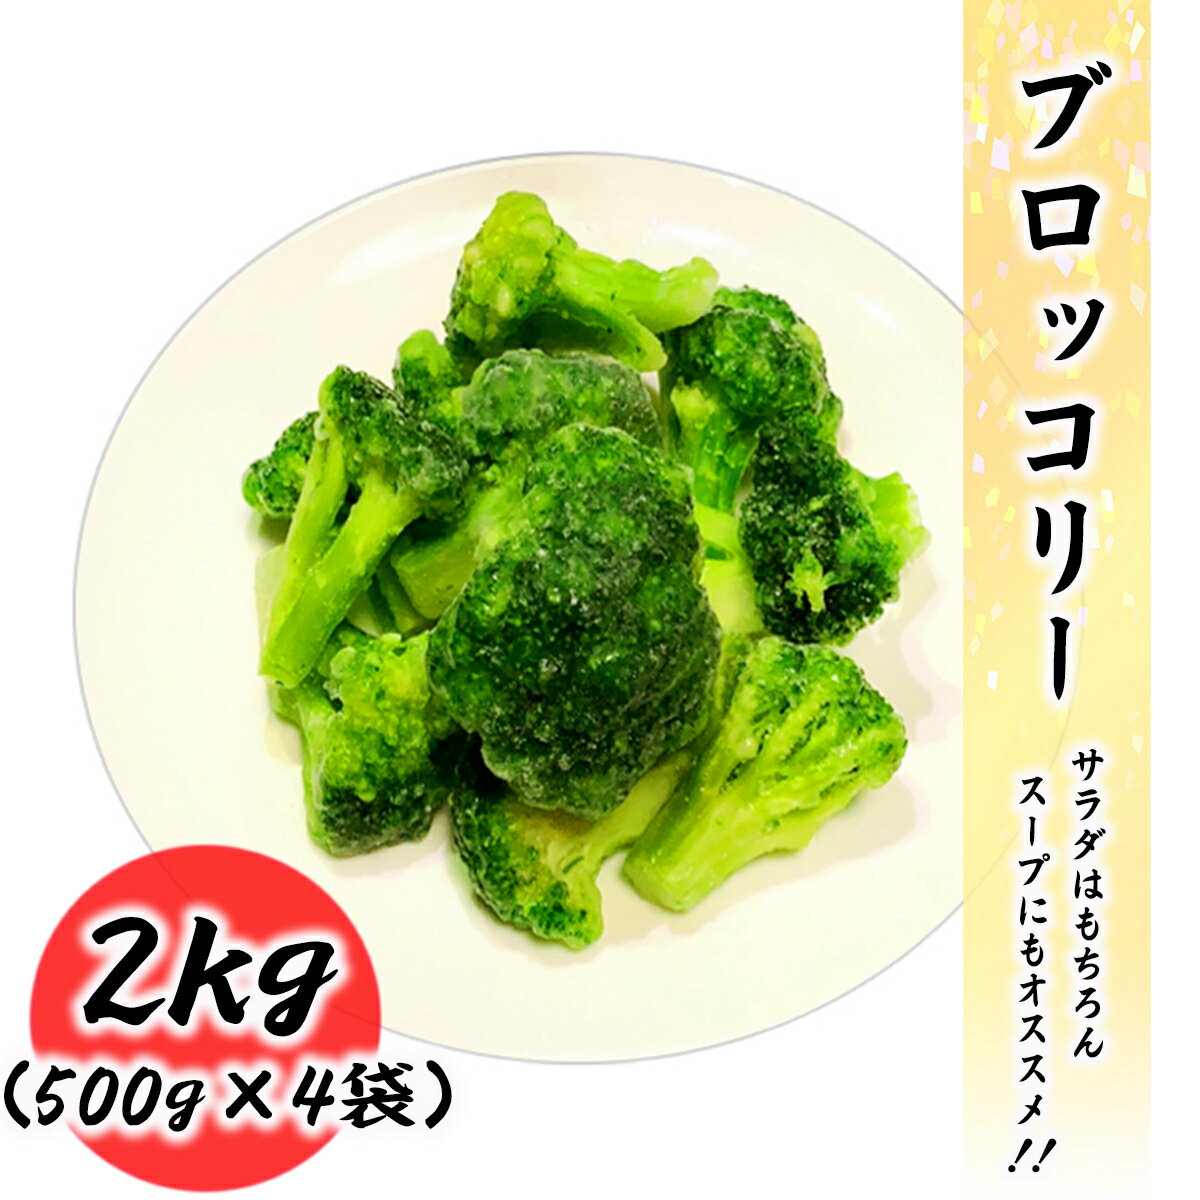 冷凍 ブロッコリー 2kg (500g×4袋) 常備に便利な冷凍野菜 業務用